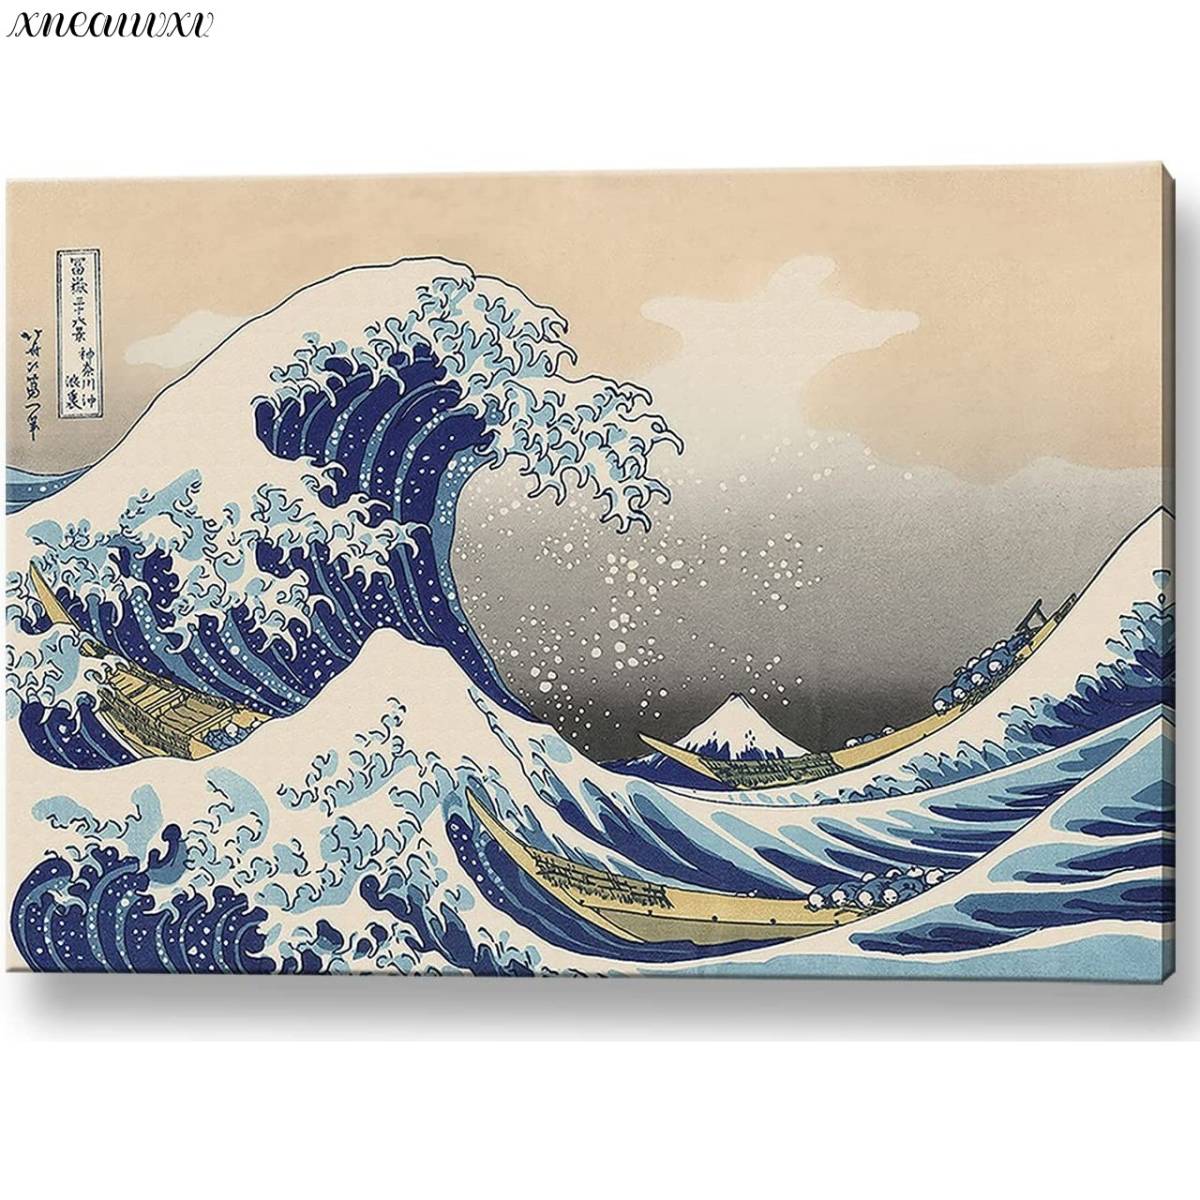 Katsushika Hokusai Panneau d'art Trente-six vues du mont Fuji La grande vague au large de Kanagawa Reproduction Spectaculaire Vue Art Décoration de style japonais Classique Paysage naturel Peinture de mer Art intérieur, peinture, Ukiyo-e, imprimer, photo d'un lieu célèbre